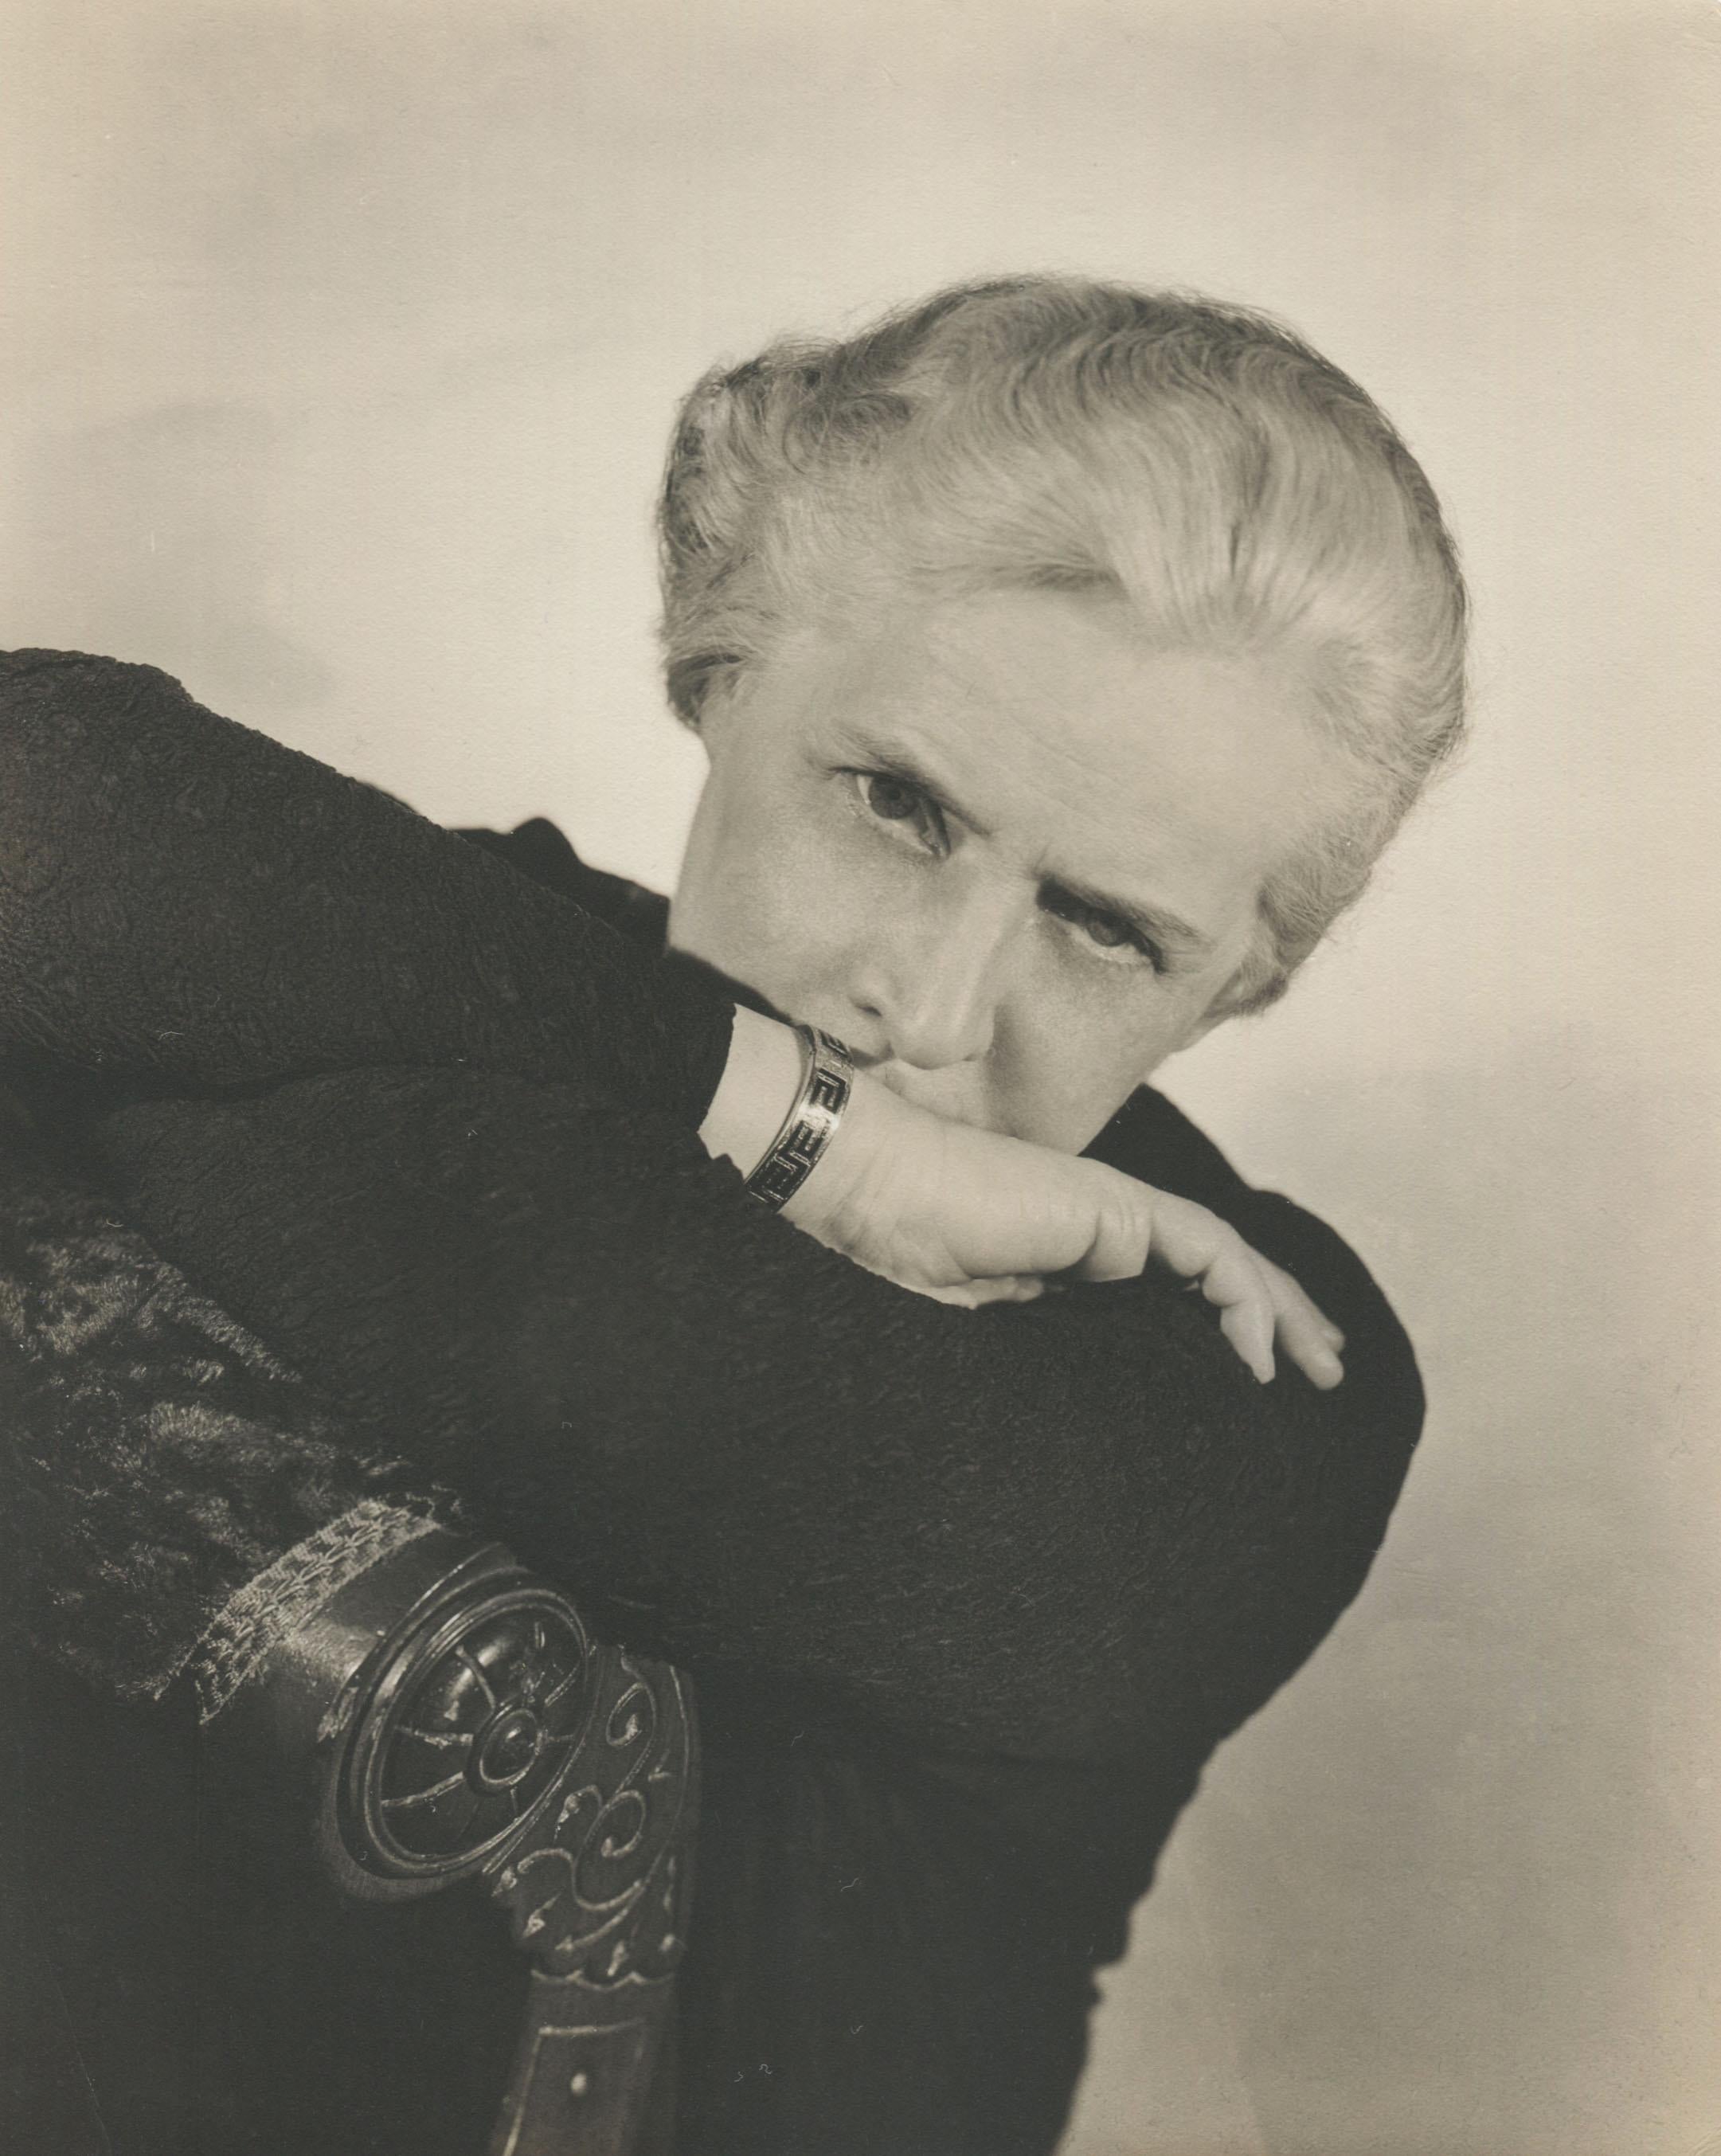 George Platt Lynes Portrait Photograph - Portrait of an Older Woman